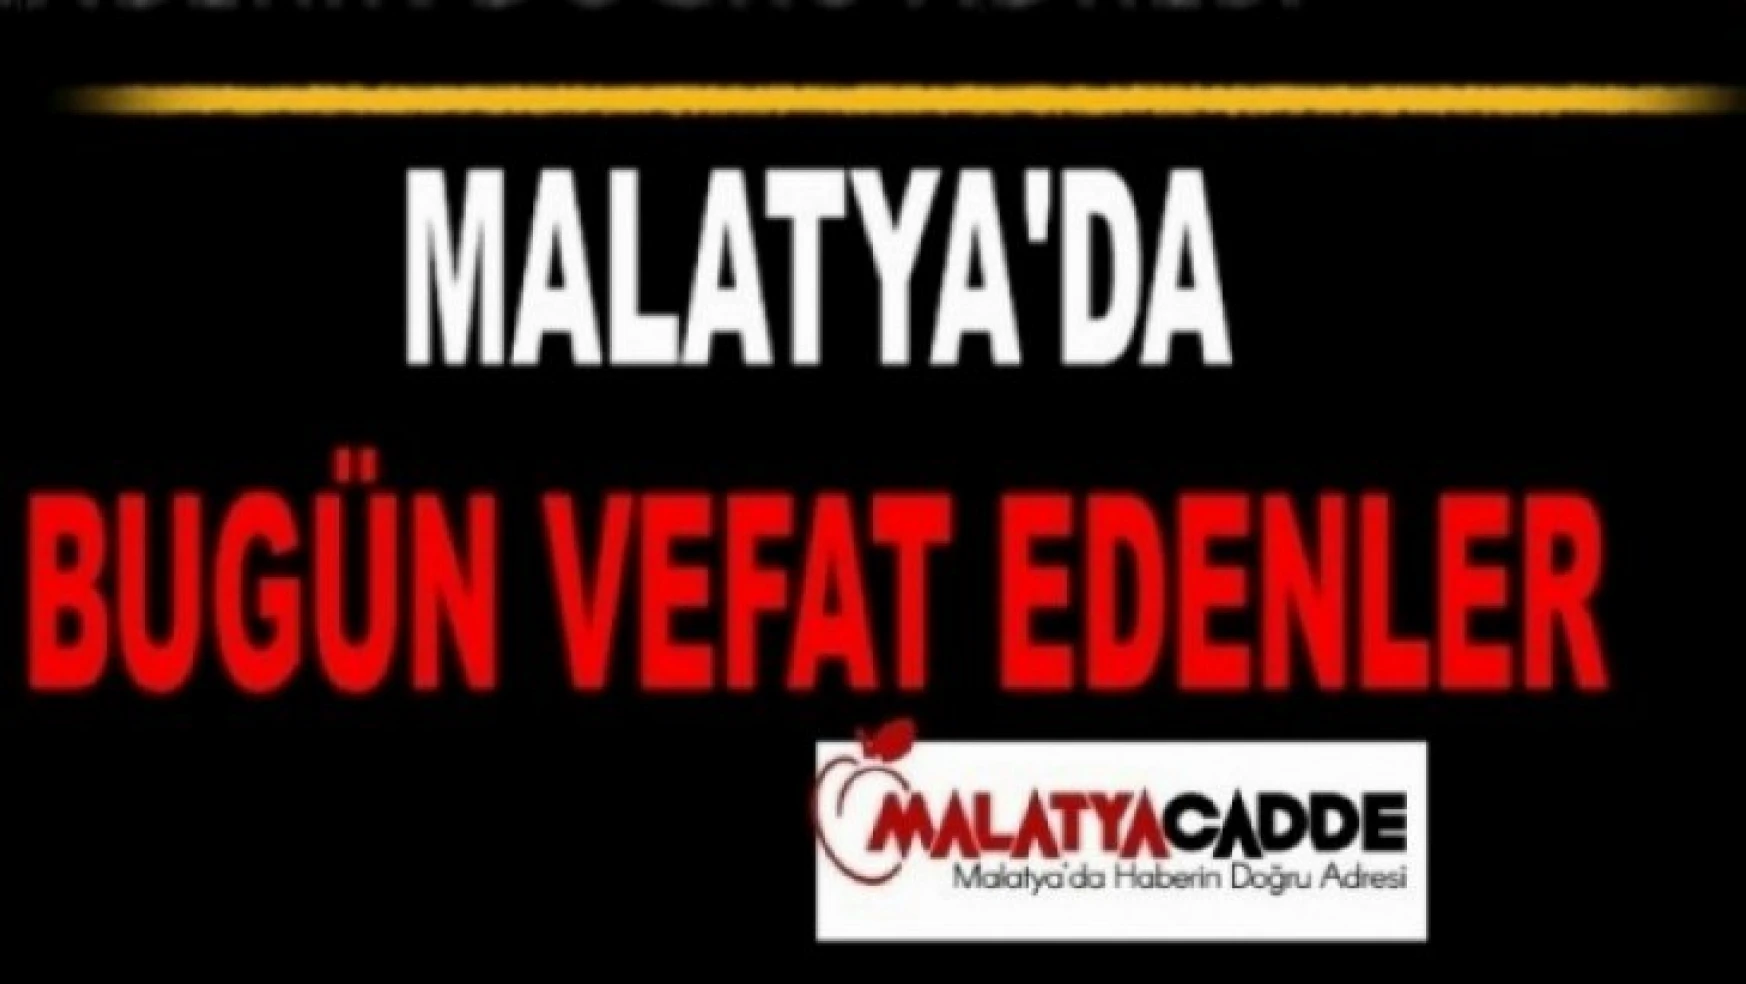 Malatya'da 01.08.2022 tarihinde 12 kişi vefat etti